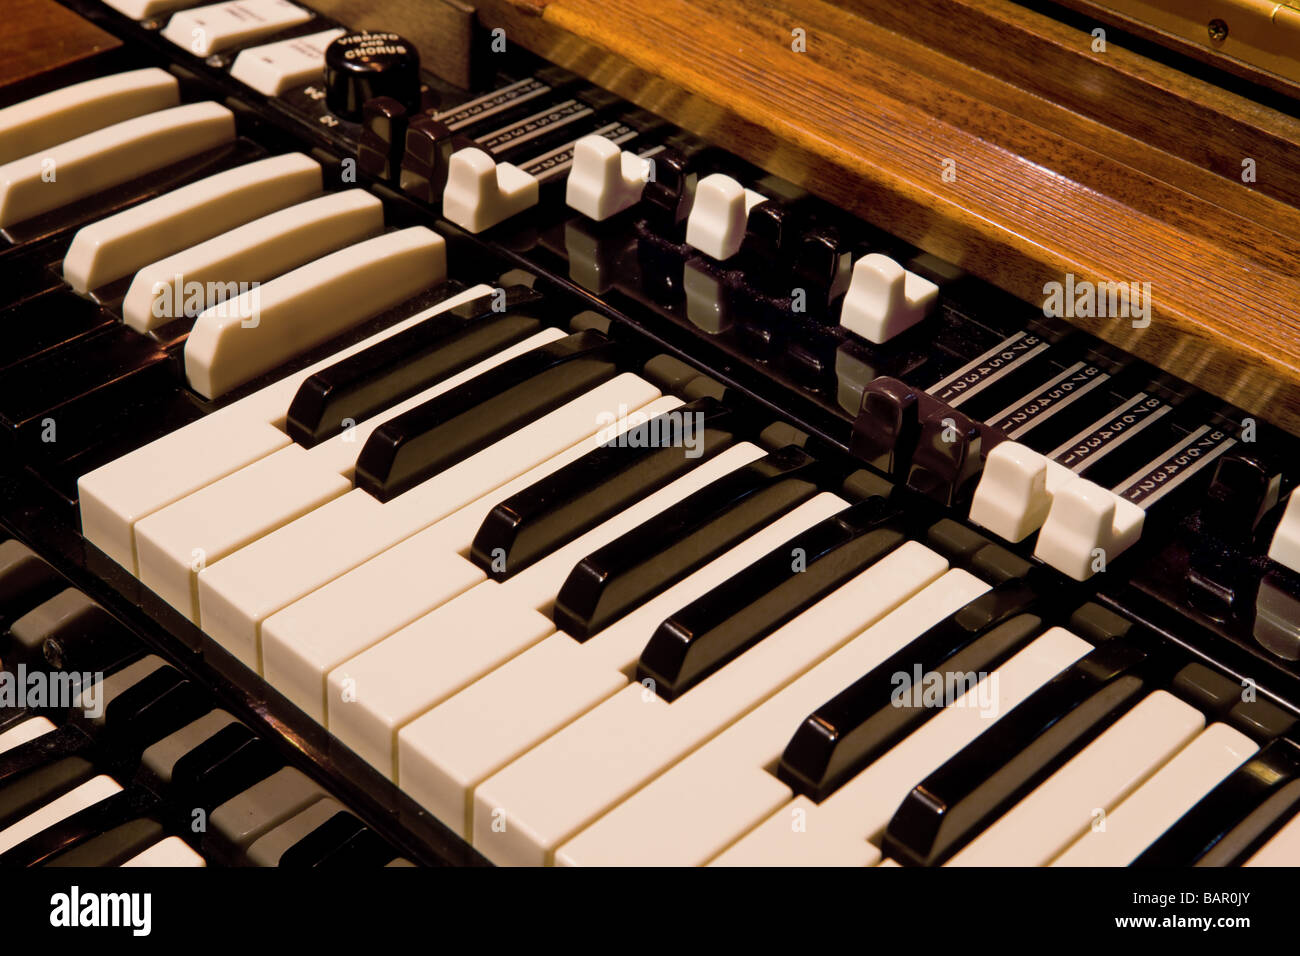 Hammond organ immagini e fotografie stock ad alta risoluzione - Alamy